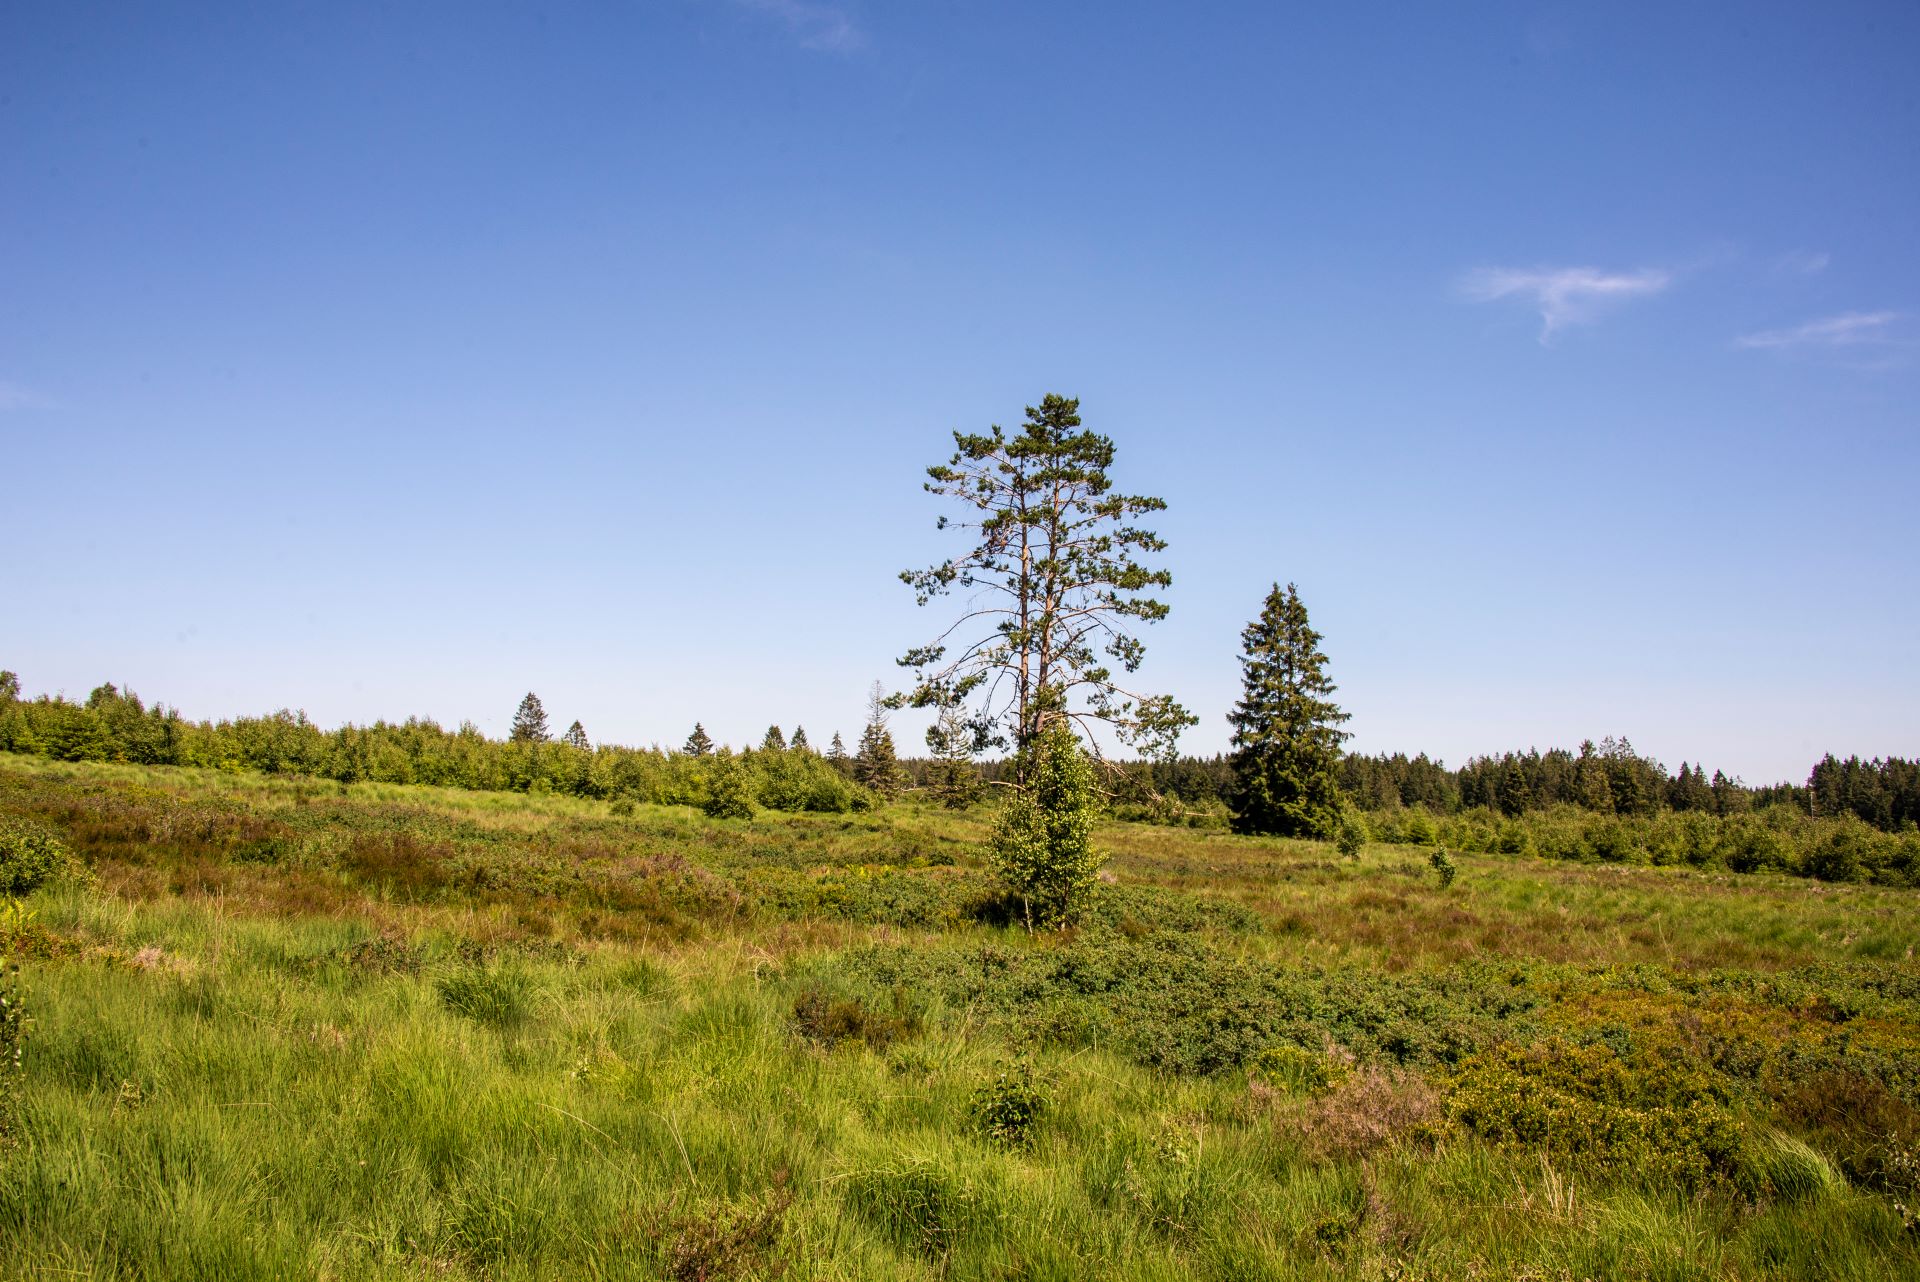 Ein einsamer Baum steht in der Mitte des Bildes. Blauer Himmel und grüne Natur umgeben den Baum, mit Wald im Hintergrund.